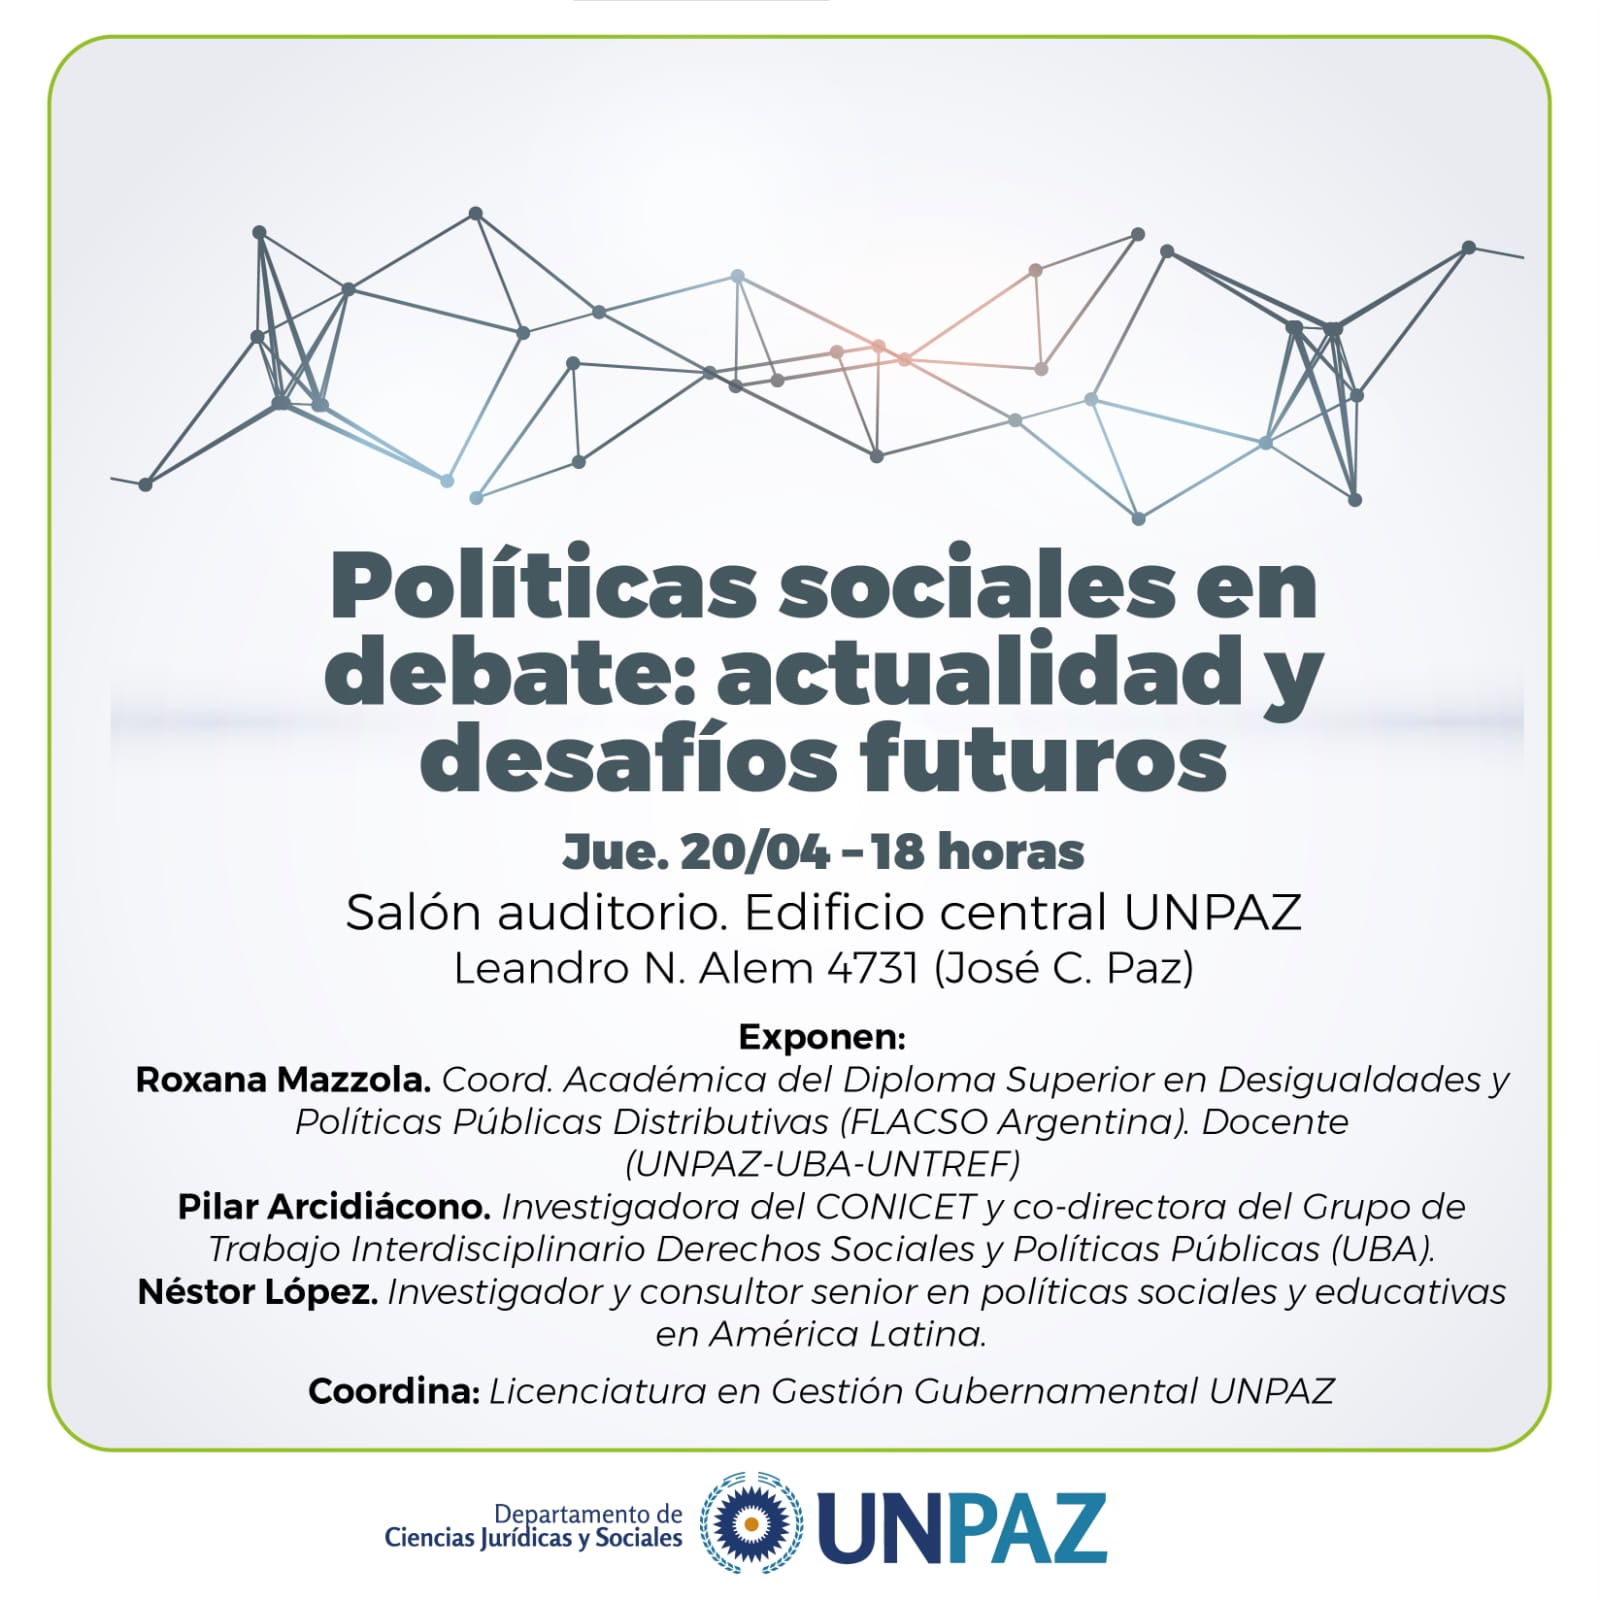 Políticas sociales en debate: actualidad y desafíos futuros. Jueves 20 de abril 18 hs. En UNPAZ, Edificio Central, Salón Auditorio.